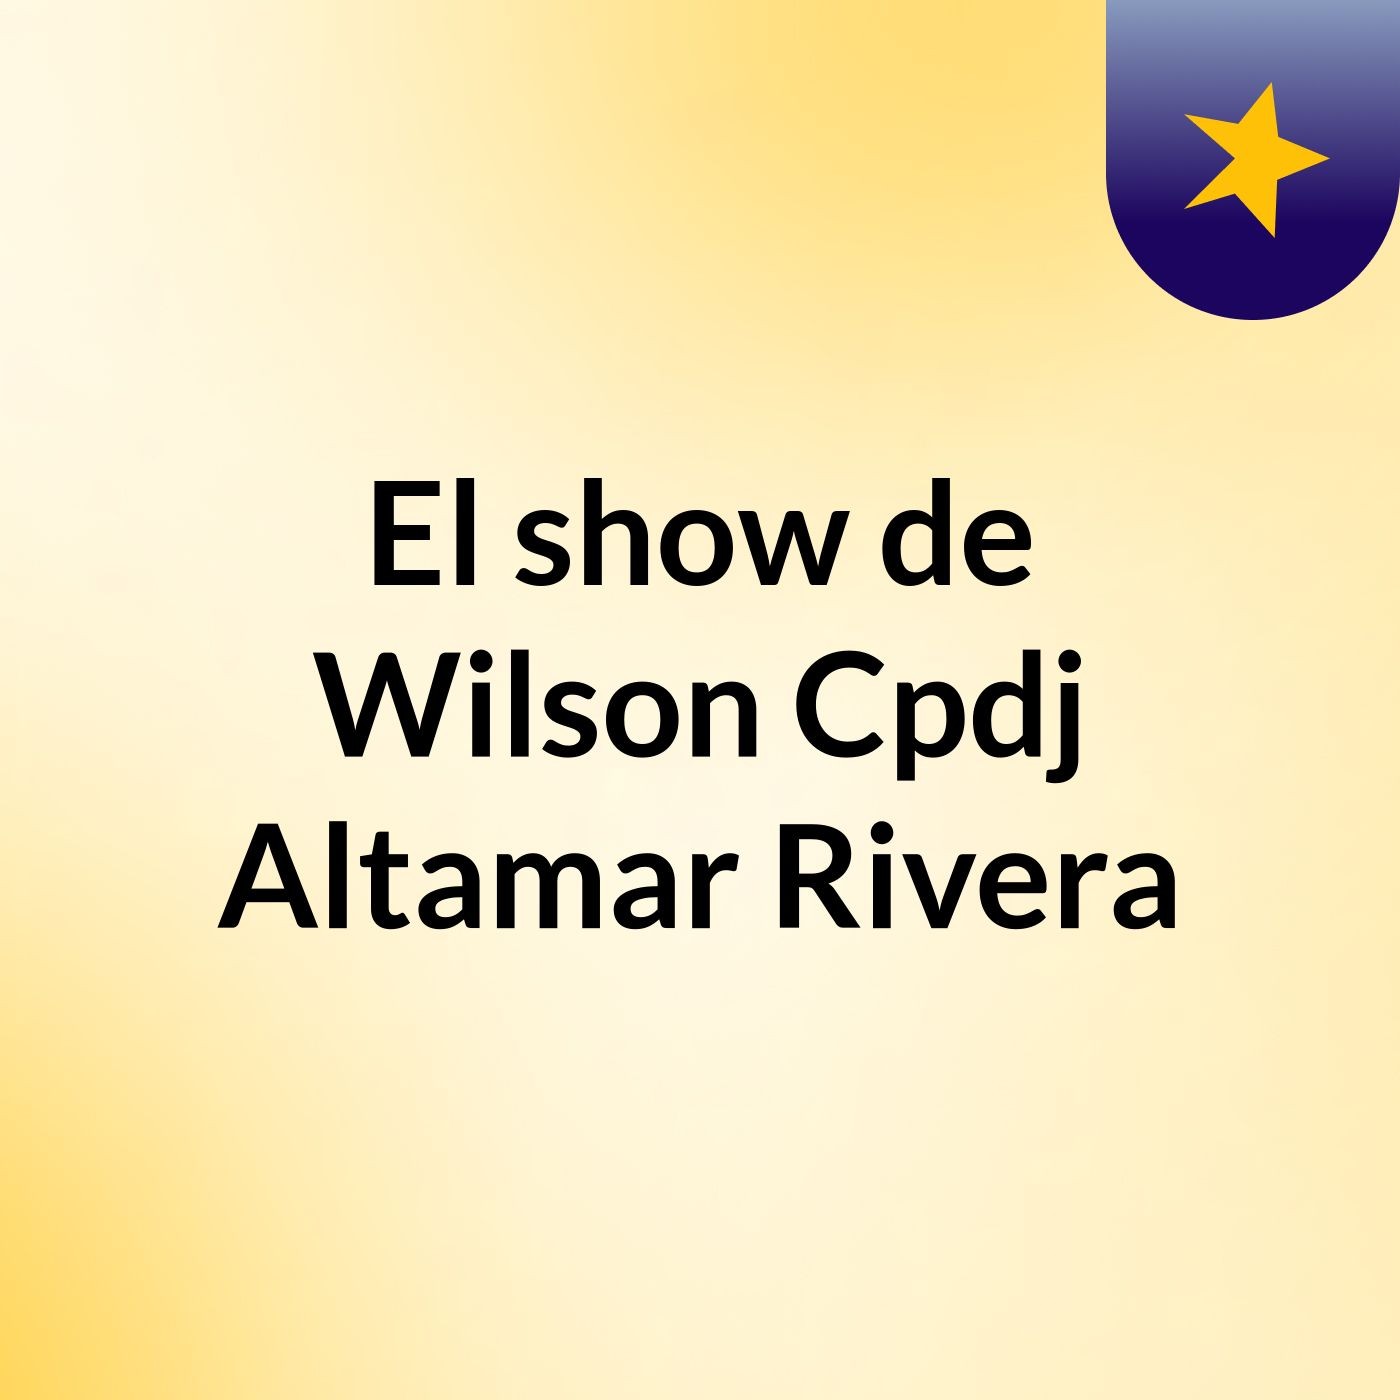 El show de Wilson Cpdj Altamar Rivera